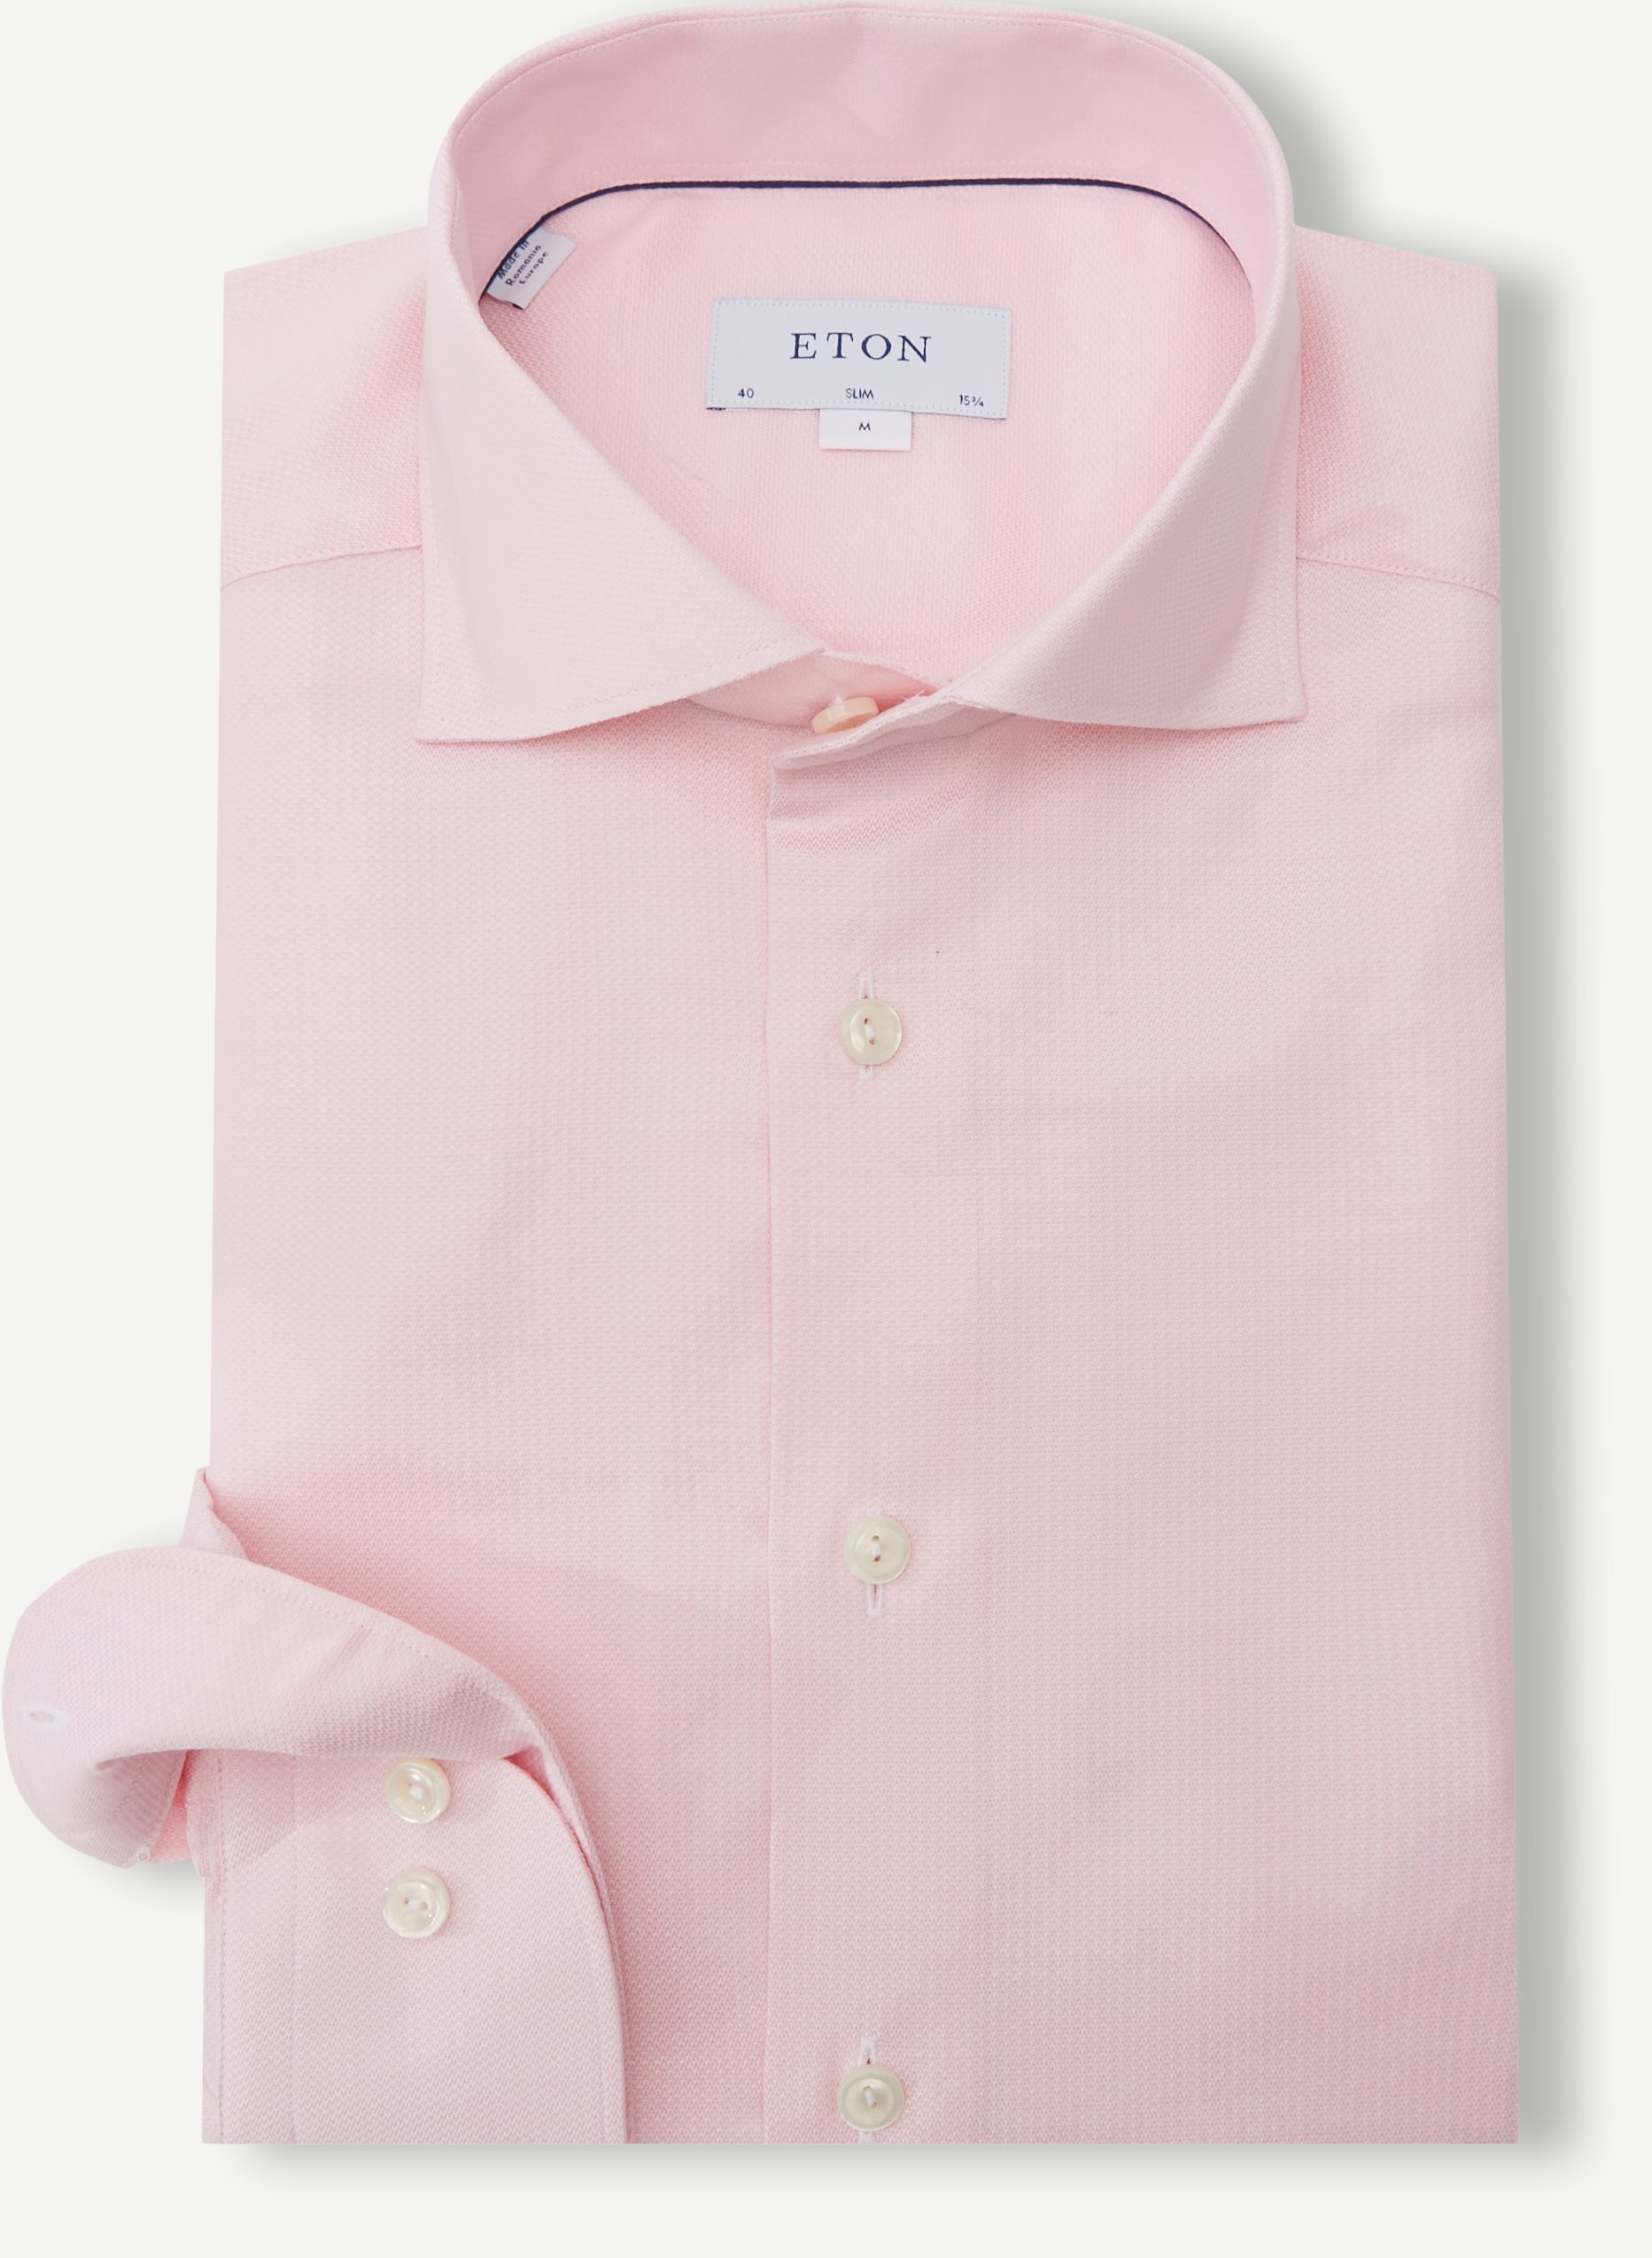 Eton Shirts 7026 84 Pink